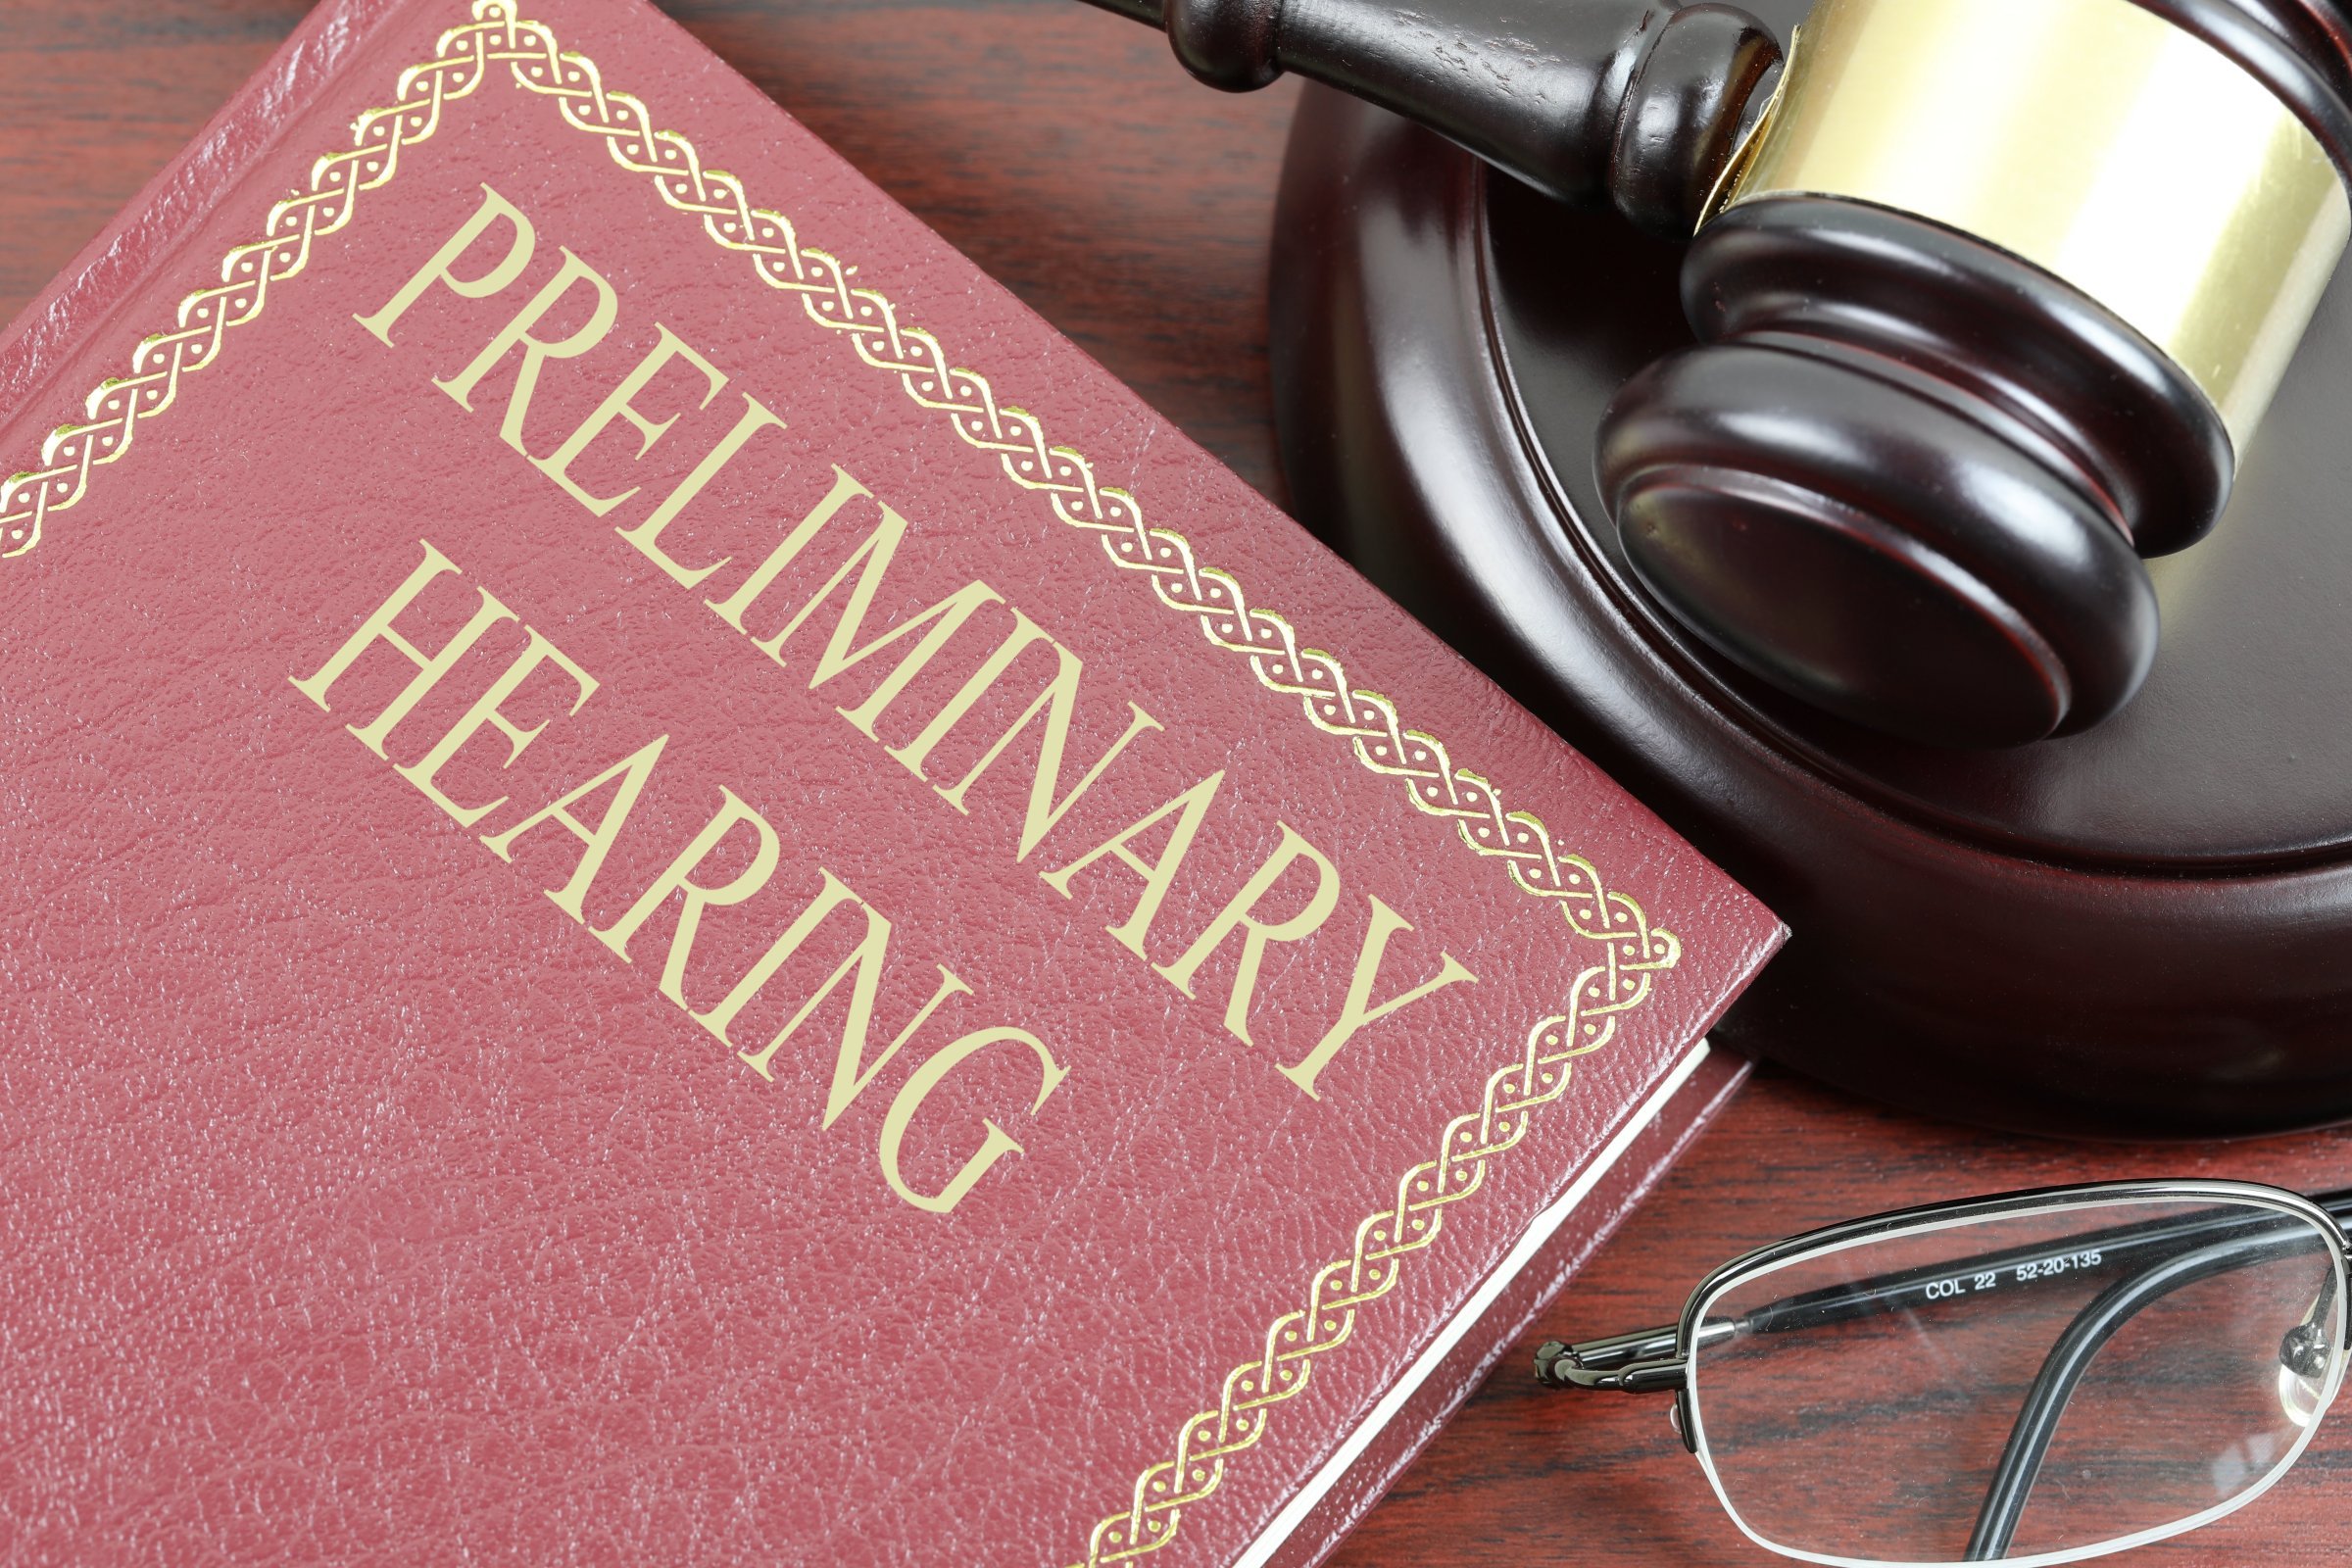 preliminary hearing